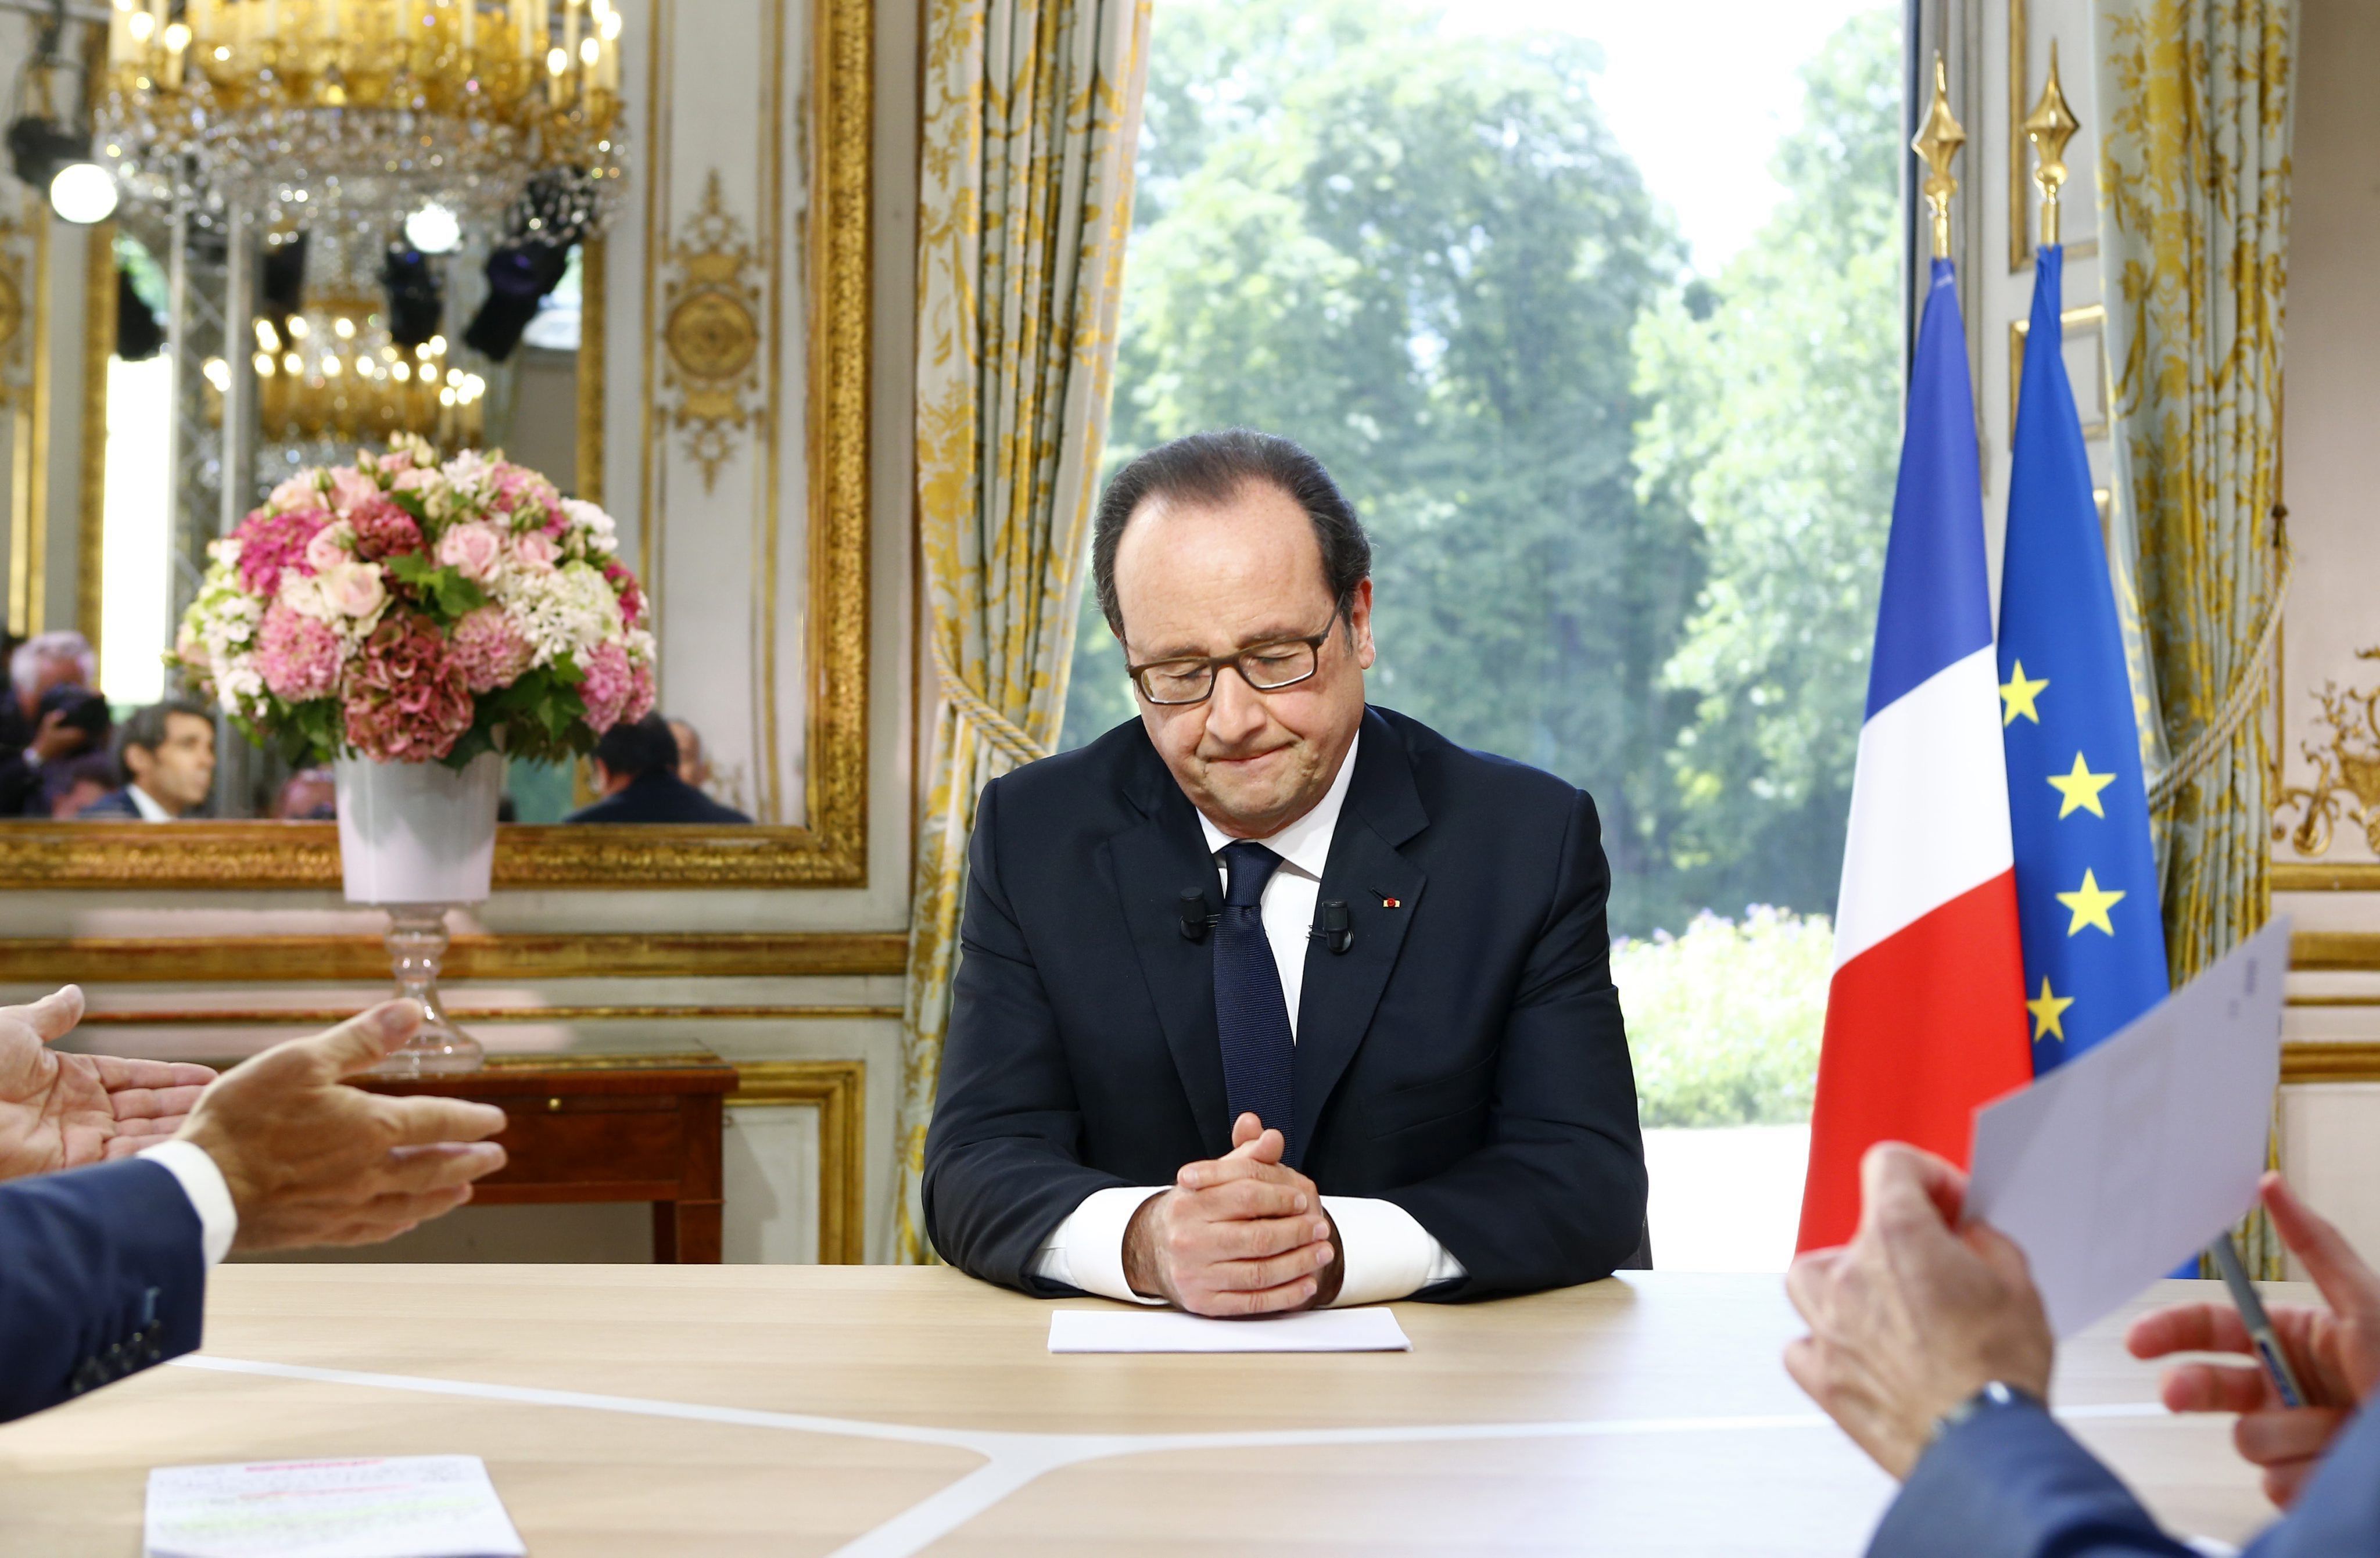 El perruquer i el ministre d'Economia compliquen la reelecció a Hollande